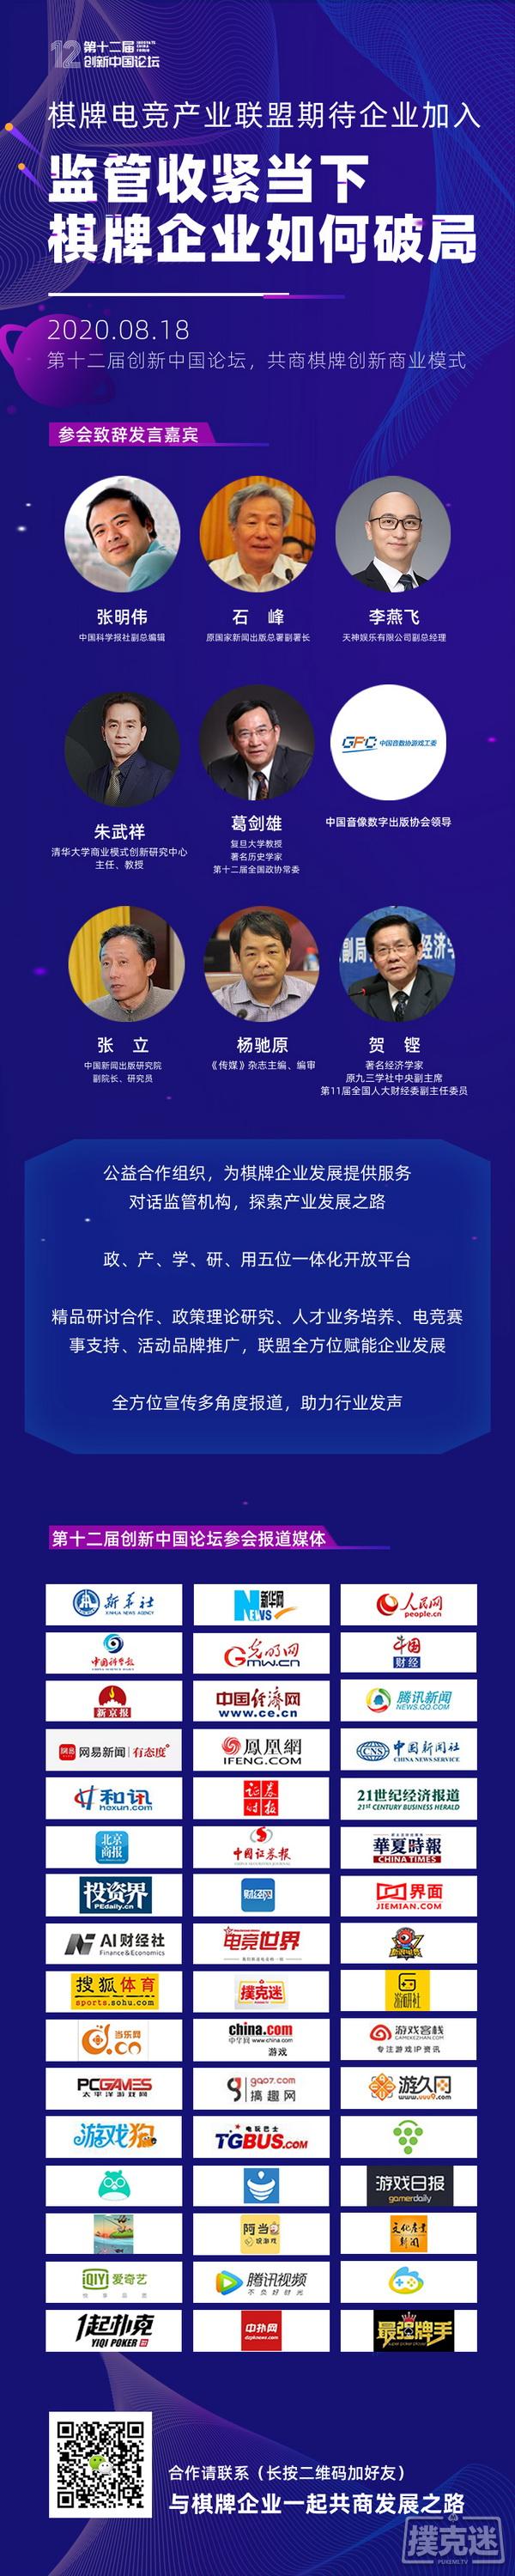 第十二届创新中国论坛——聚焦棋牌创新发展模式，就差你了